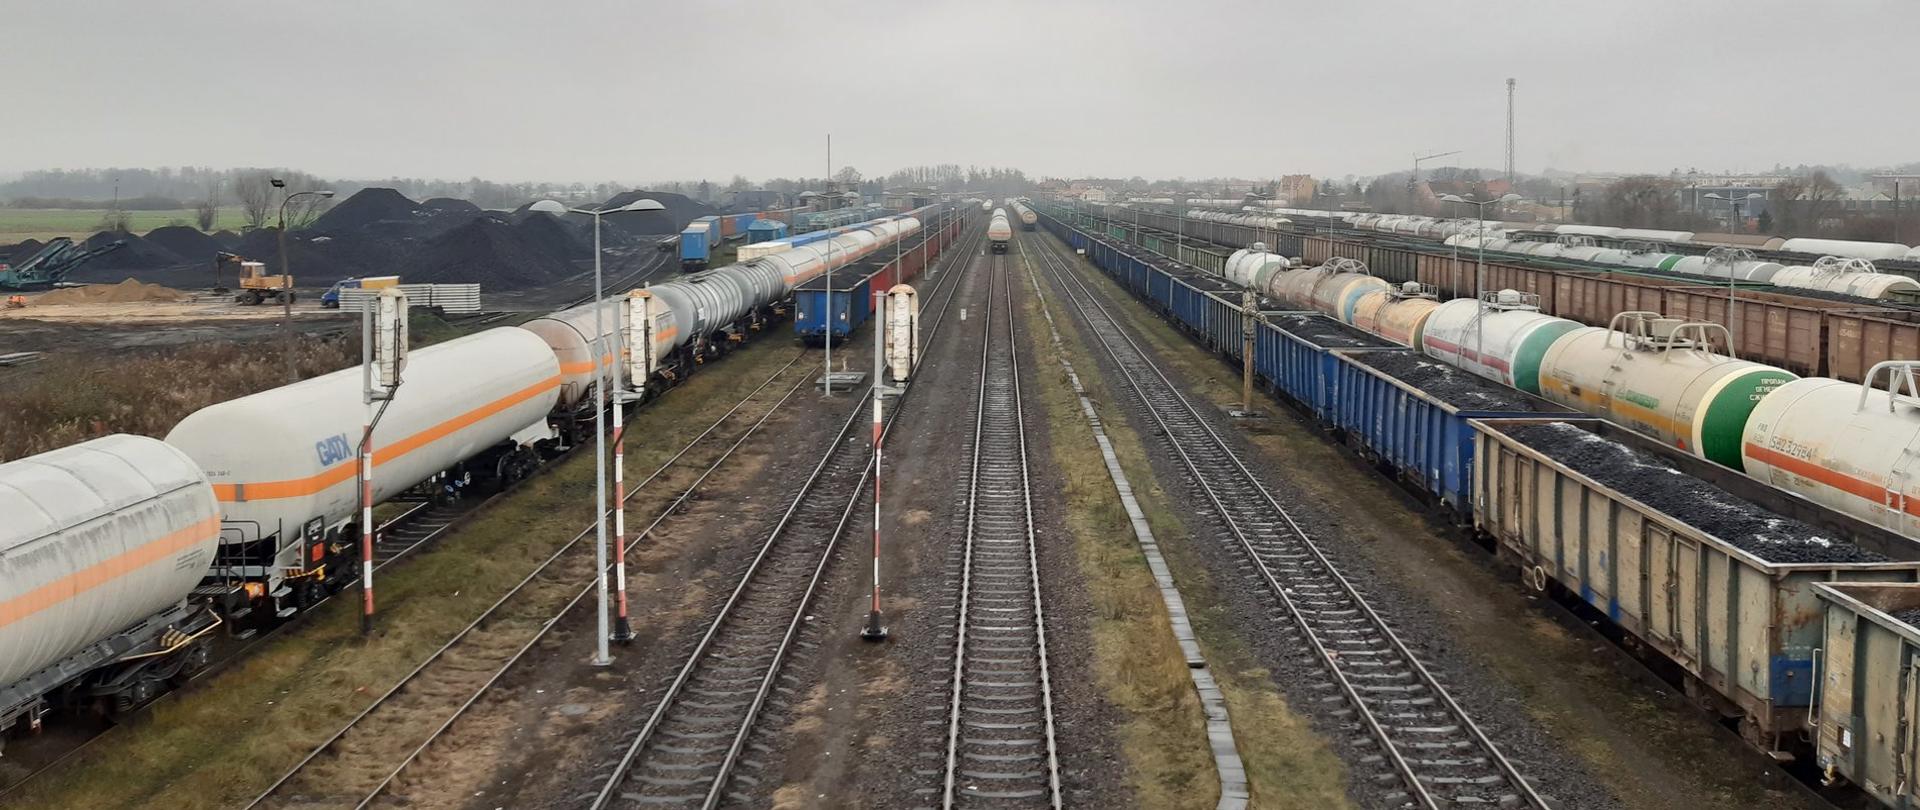 Bocznica kolejowa w Braniewie. Na zdjęciu widać pociągi towarowe oraz tory kolejowe.